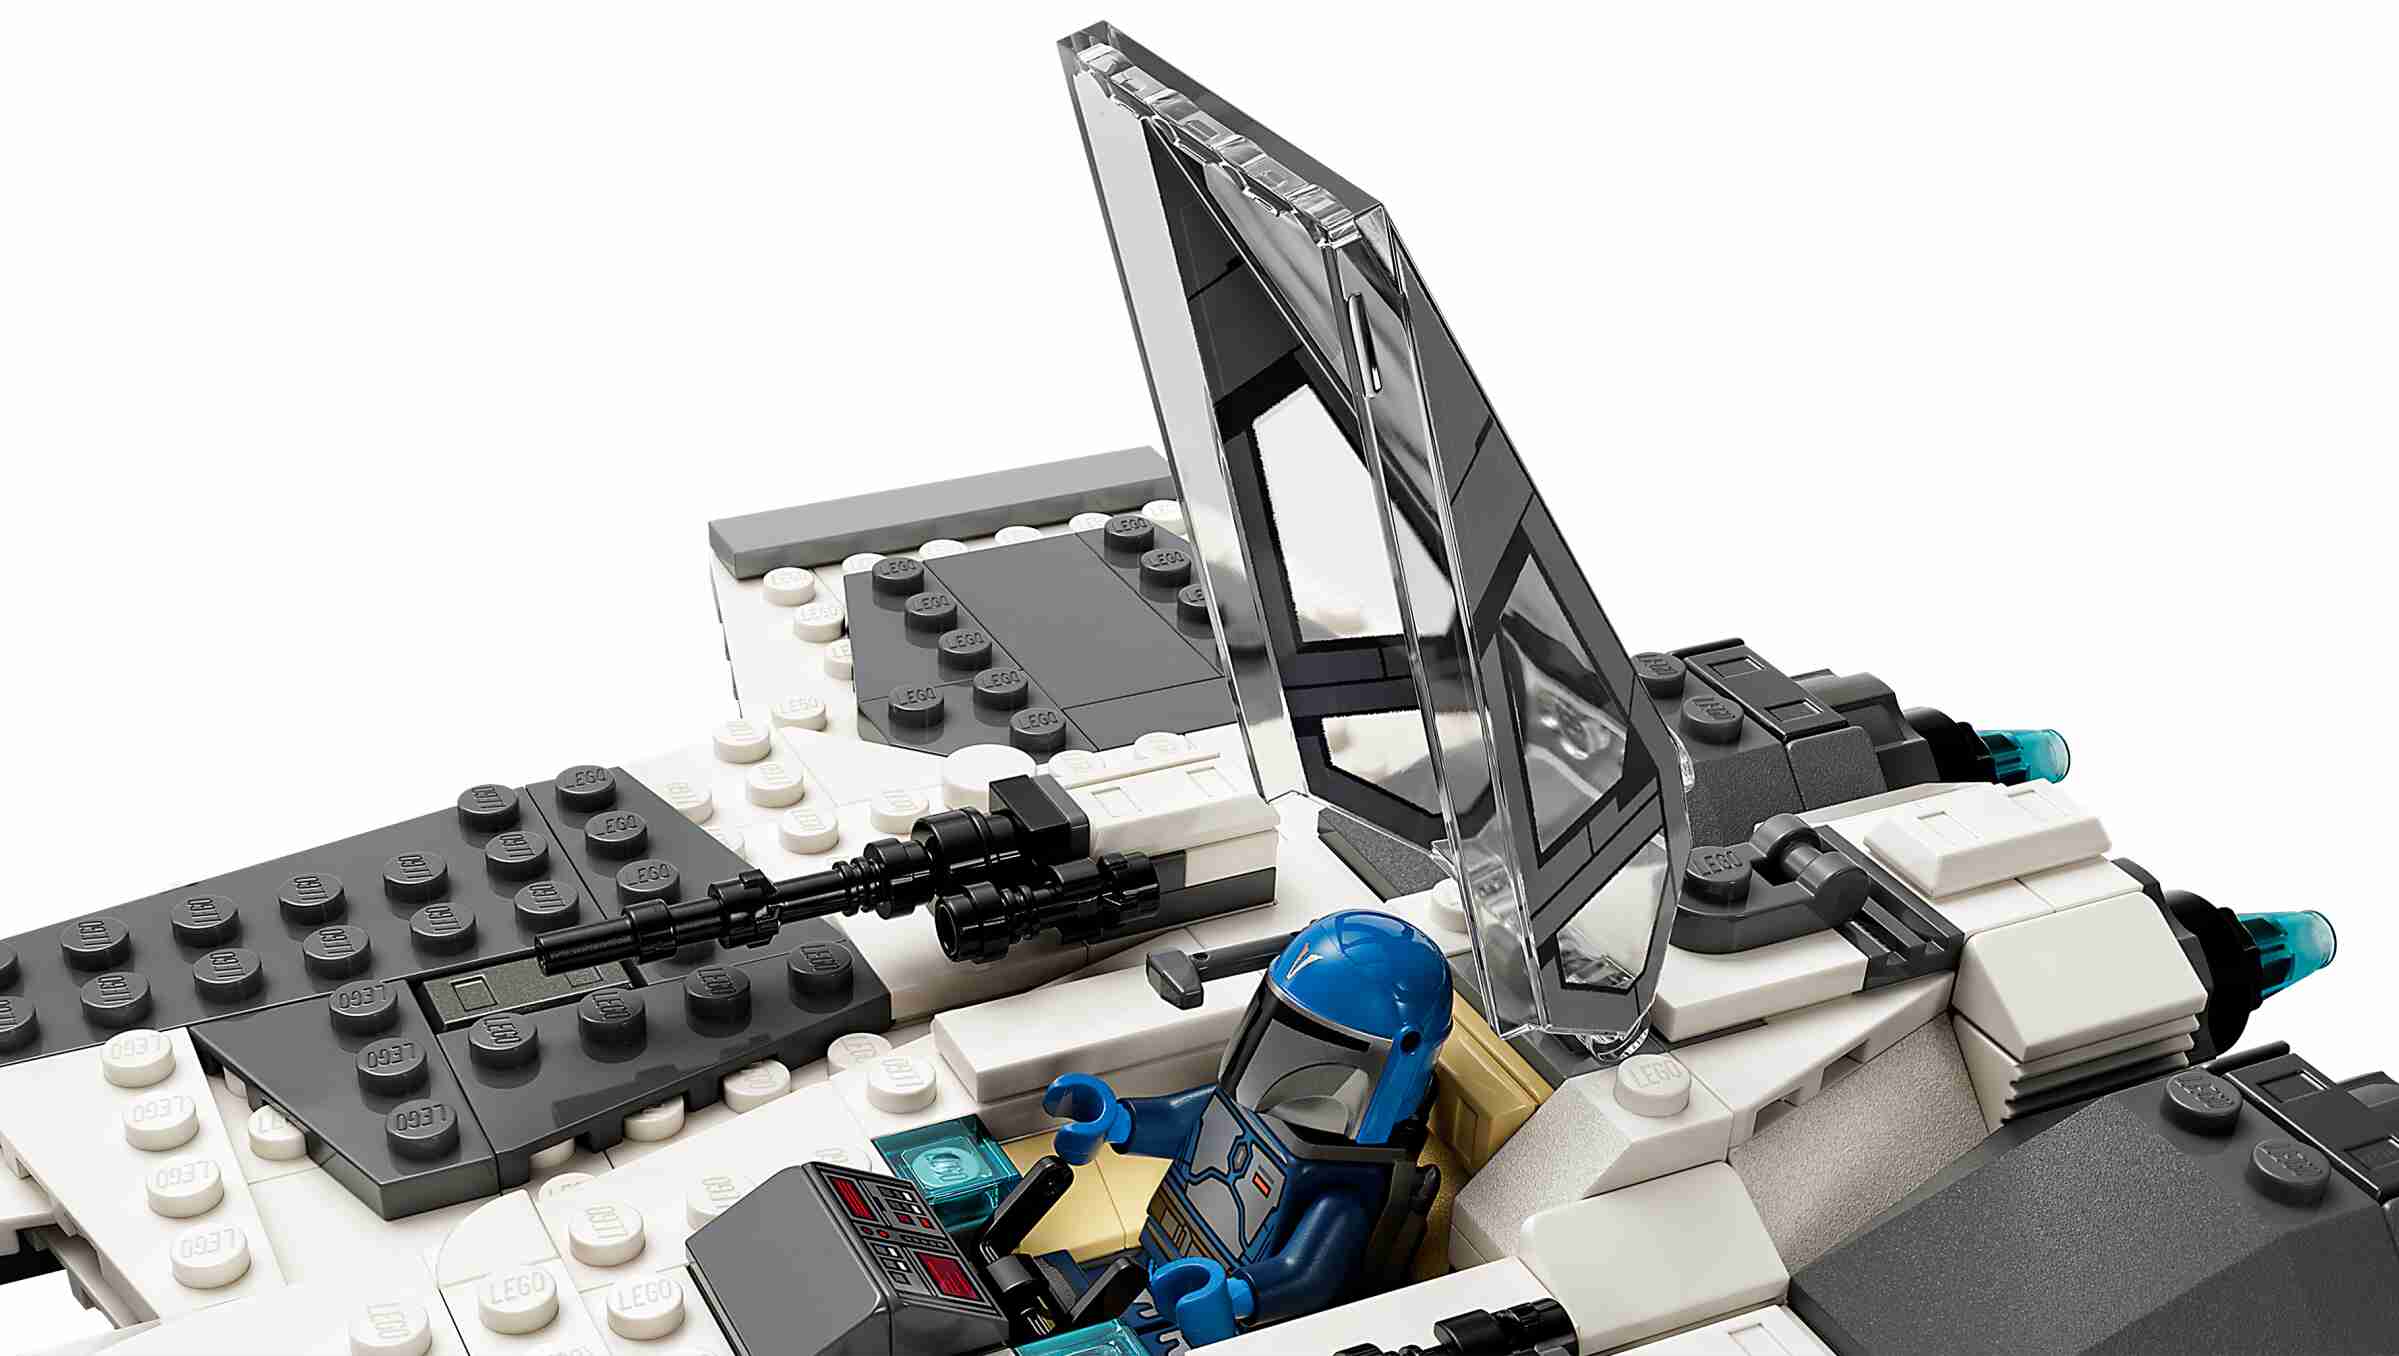 LEGO 75348 Star Wars Mandalorianischer Fang Fighter vs. TIE Interceptor